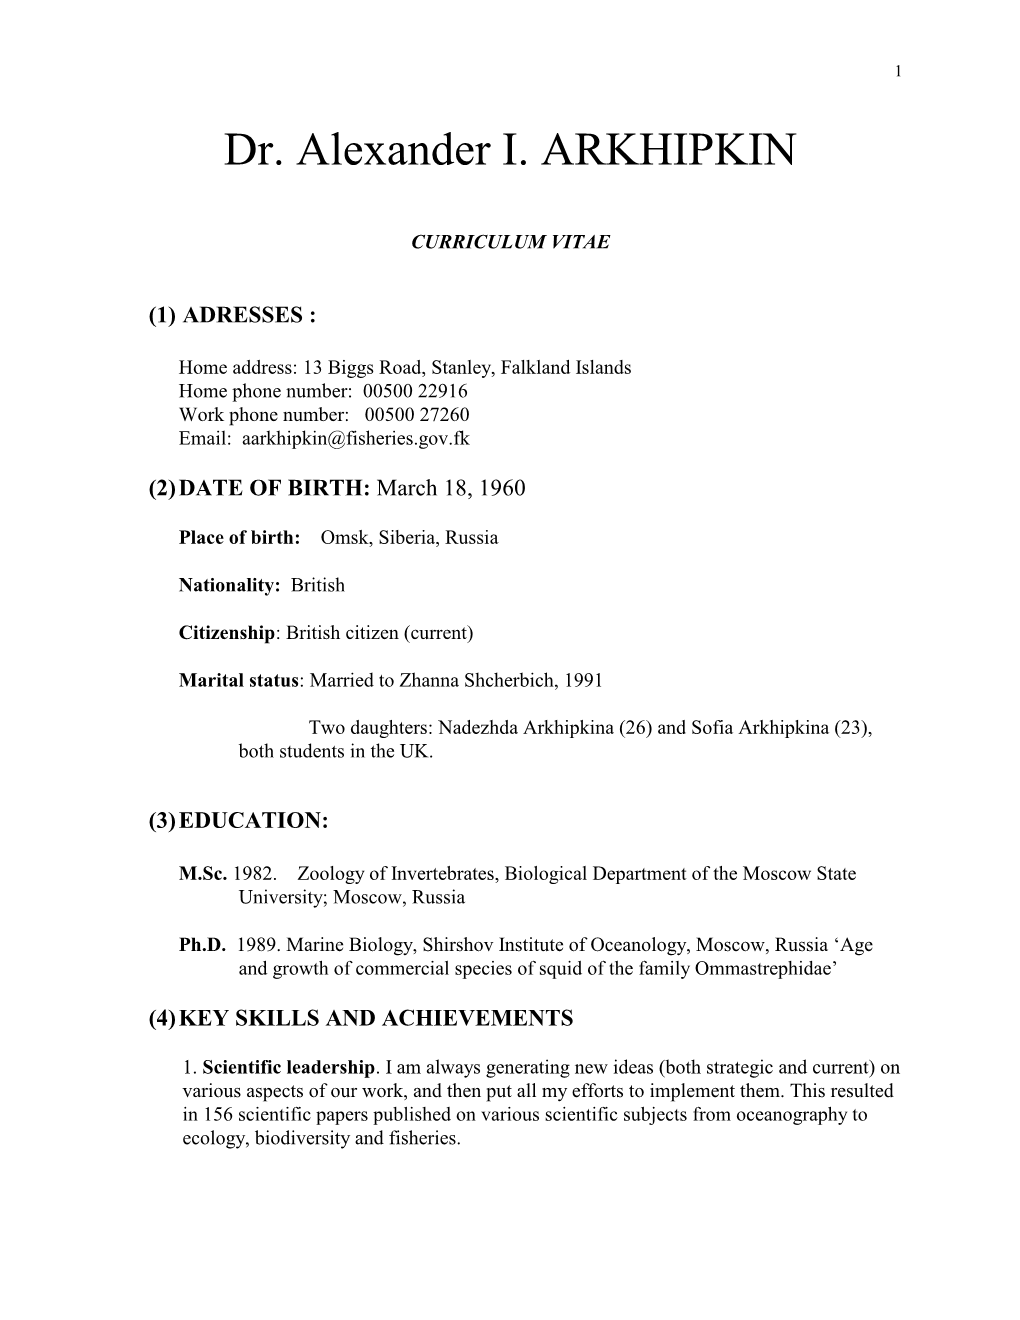 Dr. Alexander I. ARKHIPKIN